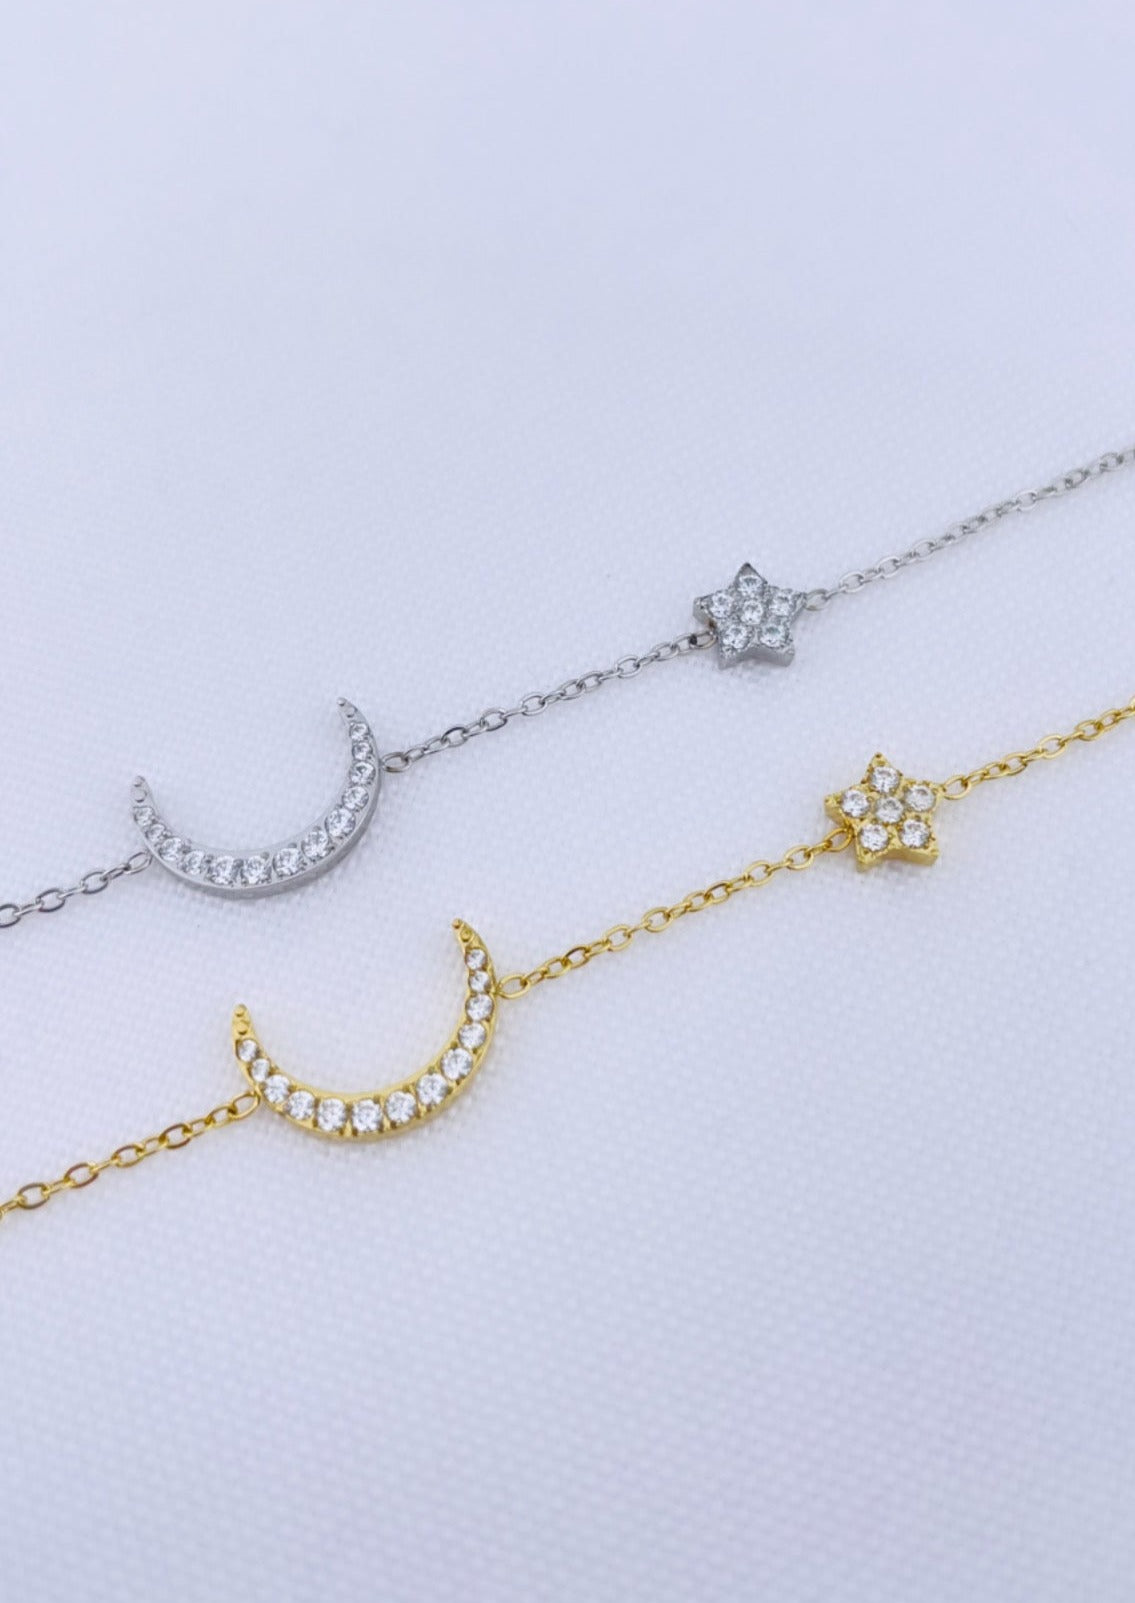 MOONLIGHT - Bracelet avec lune, étoile et zirconias